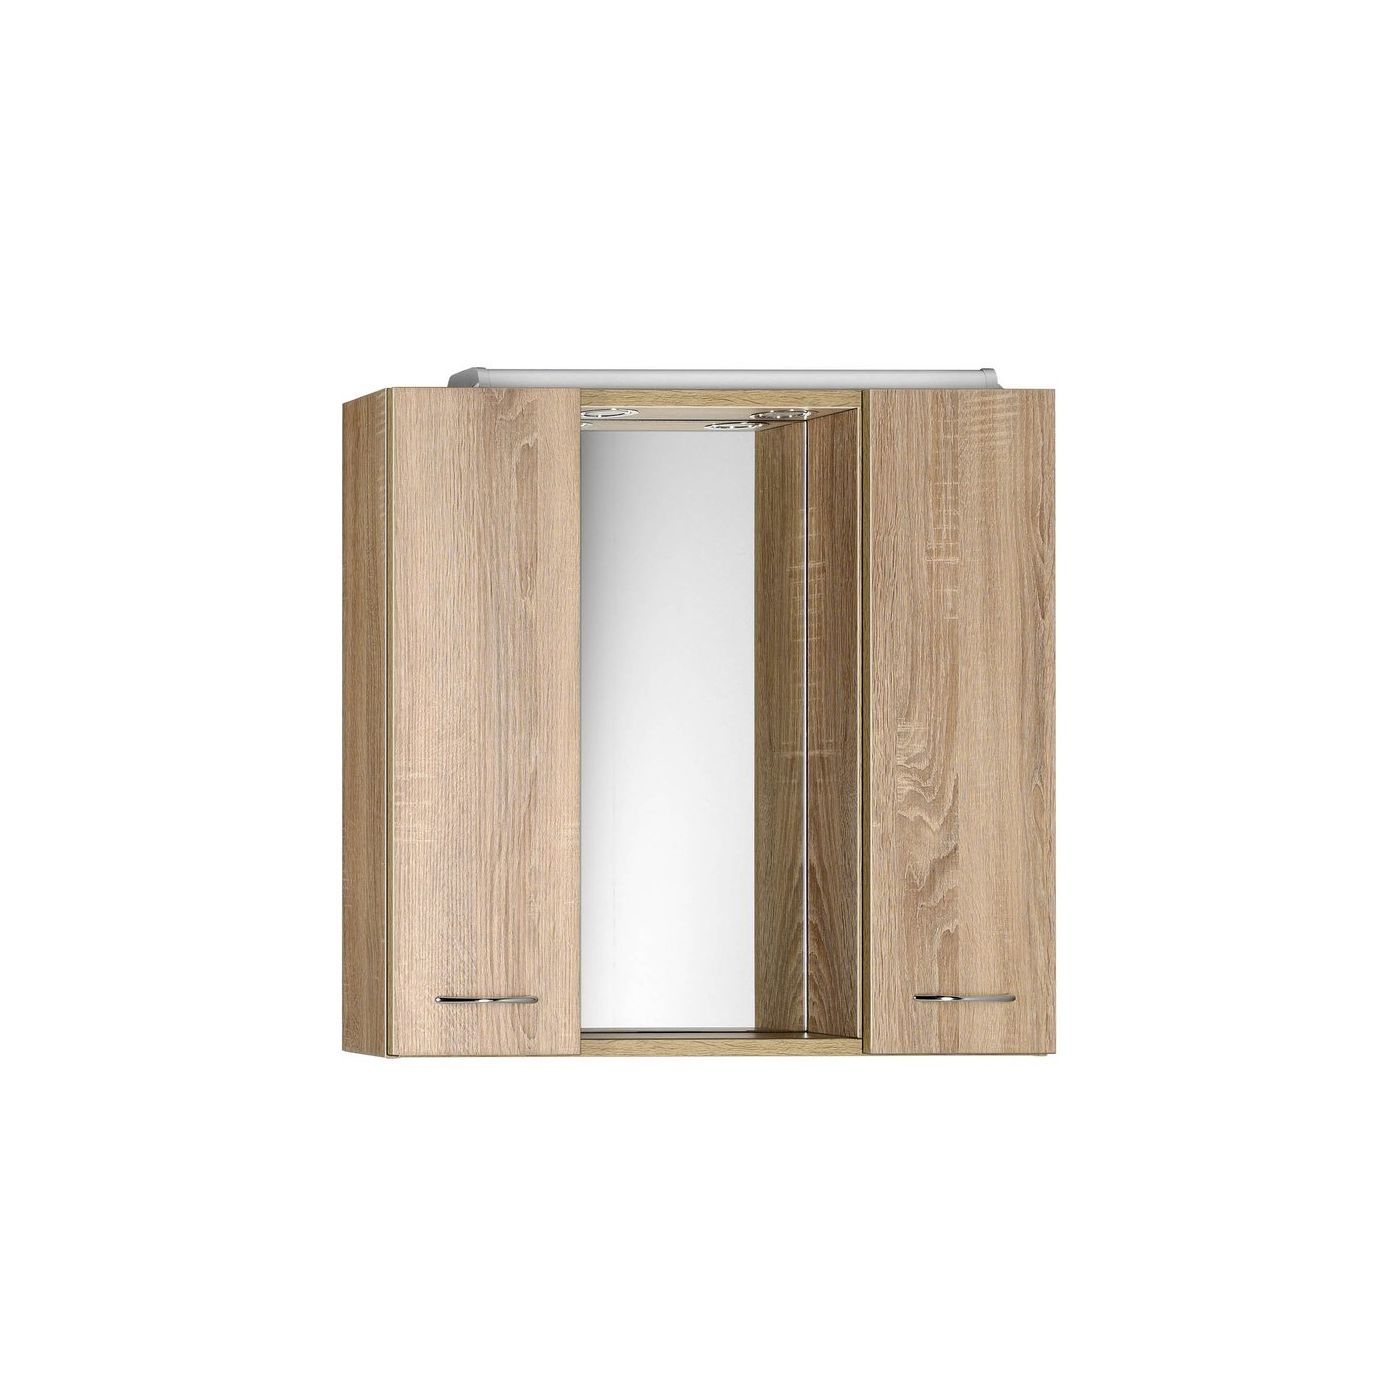 Aqualine Keramia Fresh LED-spiegelkast 70x60cm oak platin